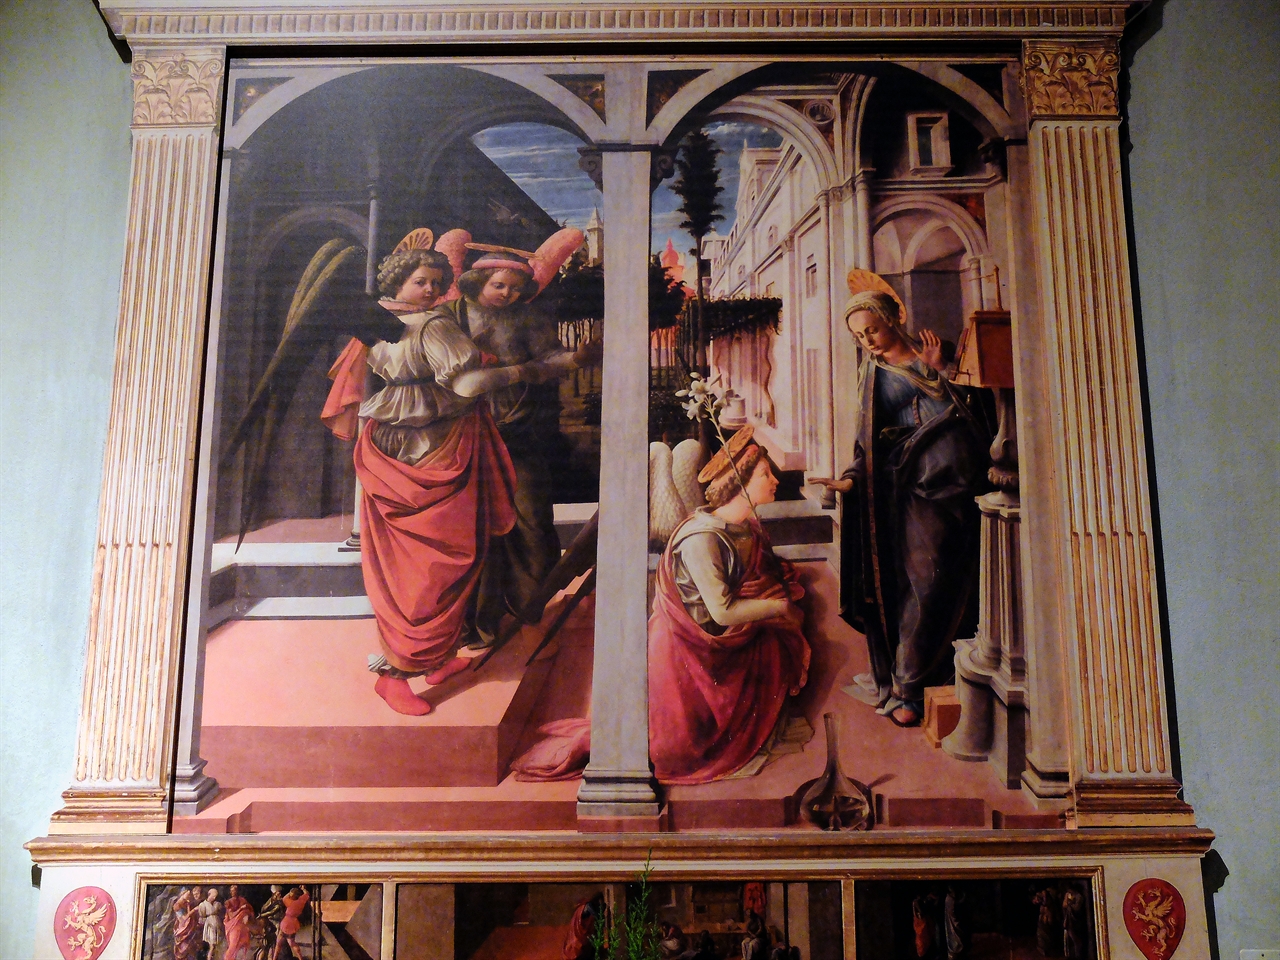 프라 필리포 리피 '수태고지' 피렌체, 산 로렌초 성당. 로마 '바르베리니 국립 미술관'과 '도리아 팜필리 미술관'에서 만났던 필리포 리피의 또다른 버전의 '수태고지'입니다.